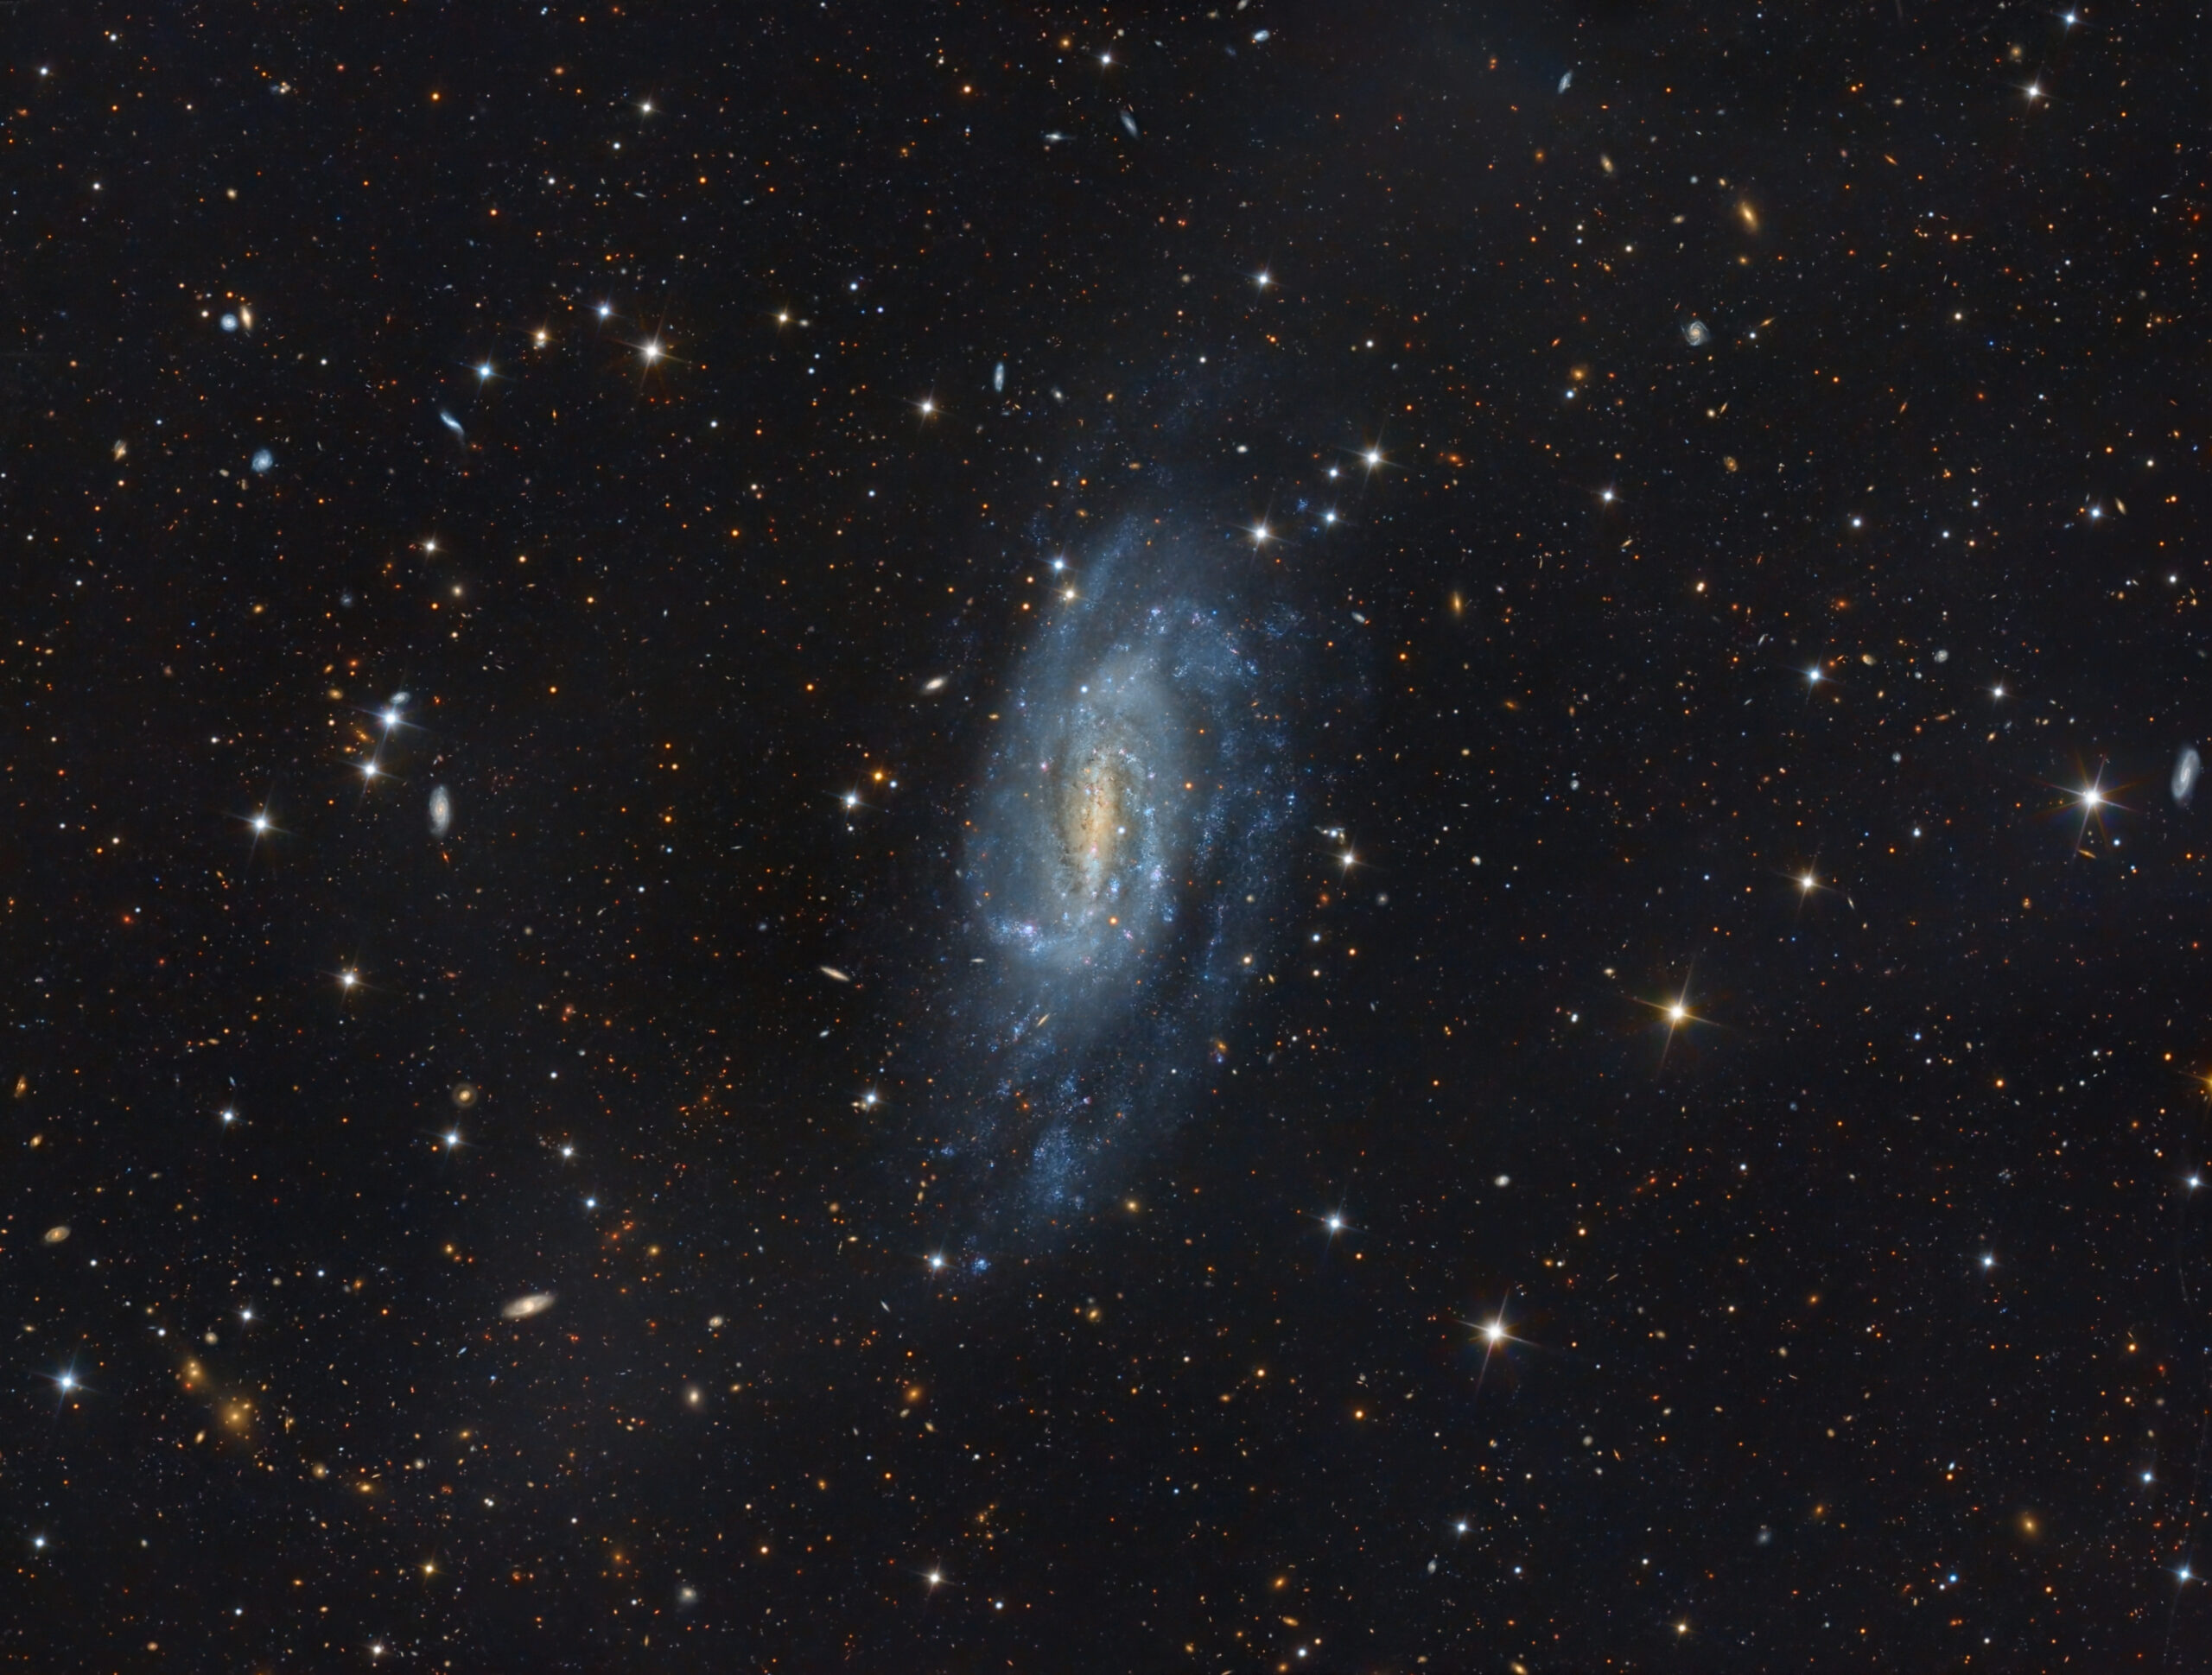 NGC 1744